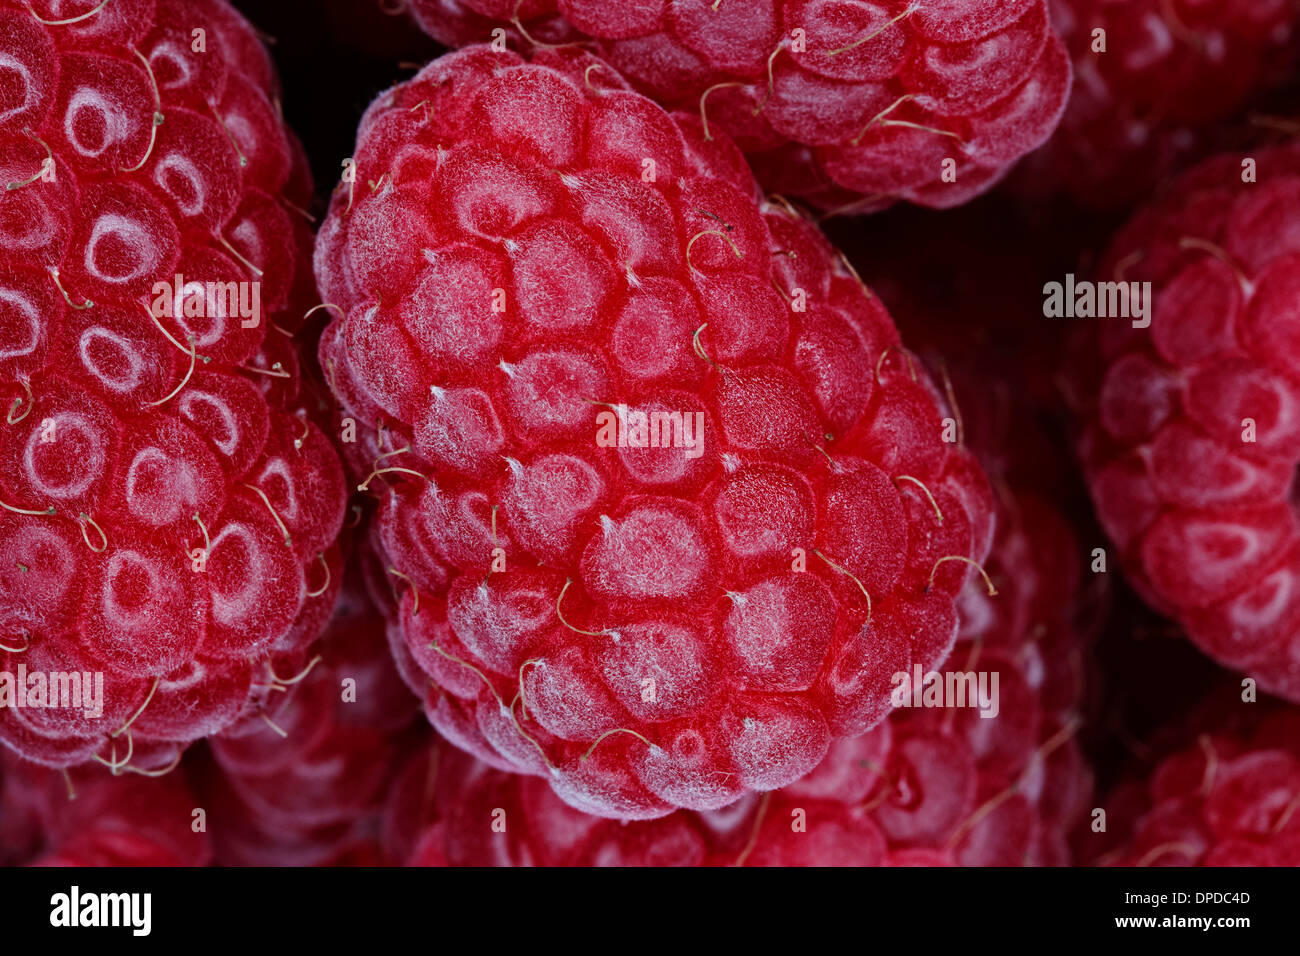 Raspberries, full frame Stock Photo